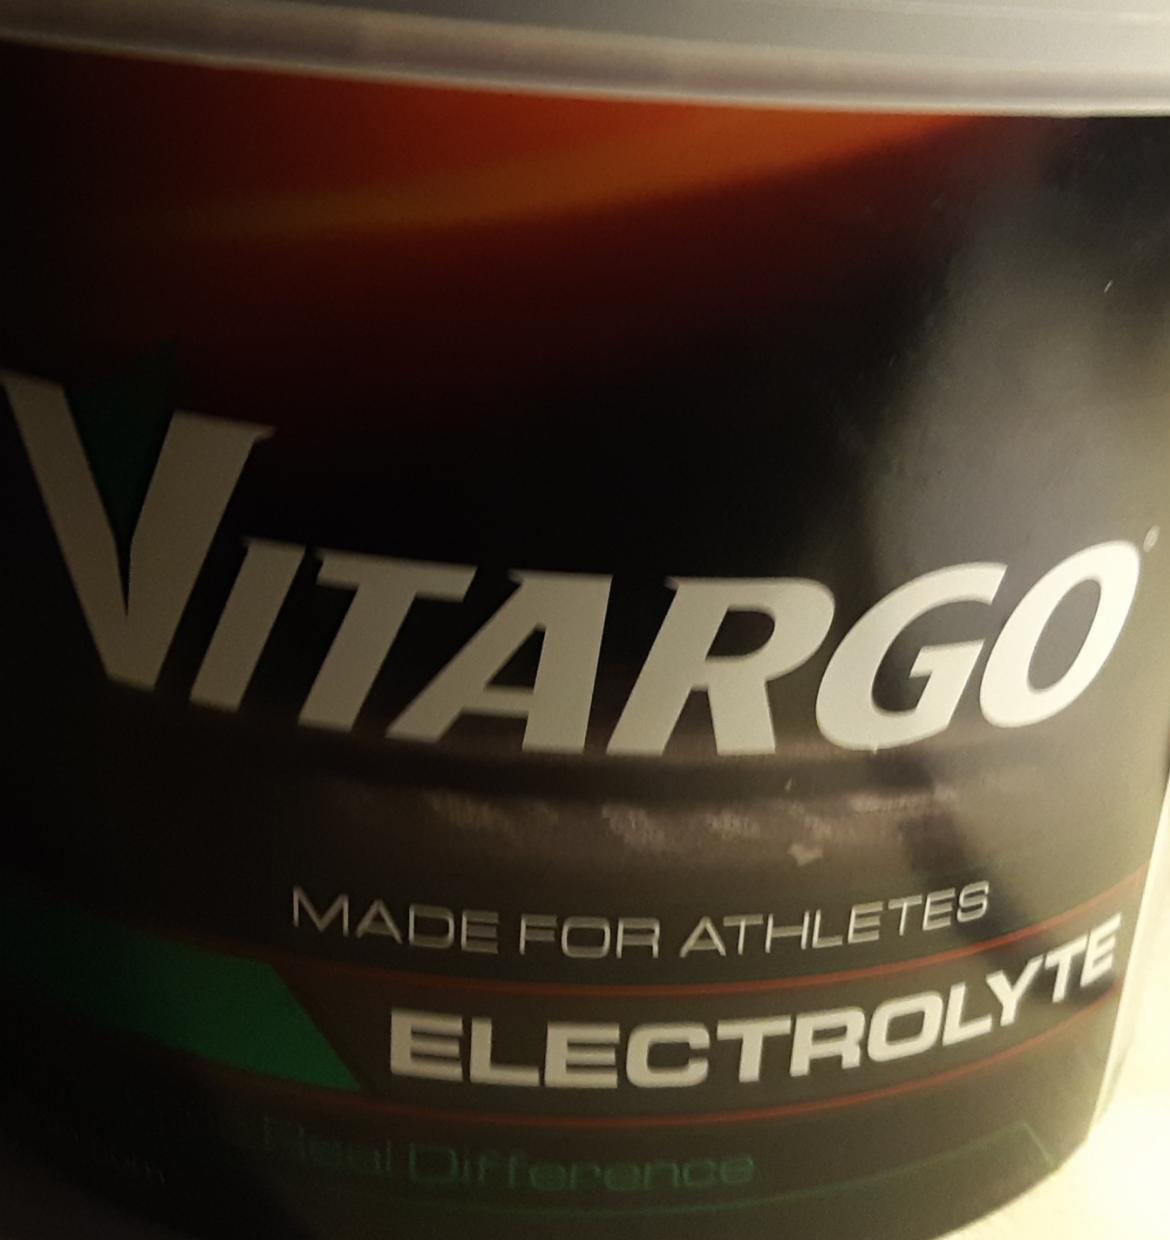 Zdjęcia - Electrolyte Vitargo